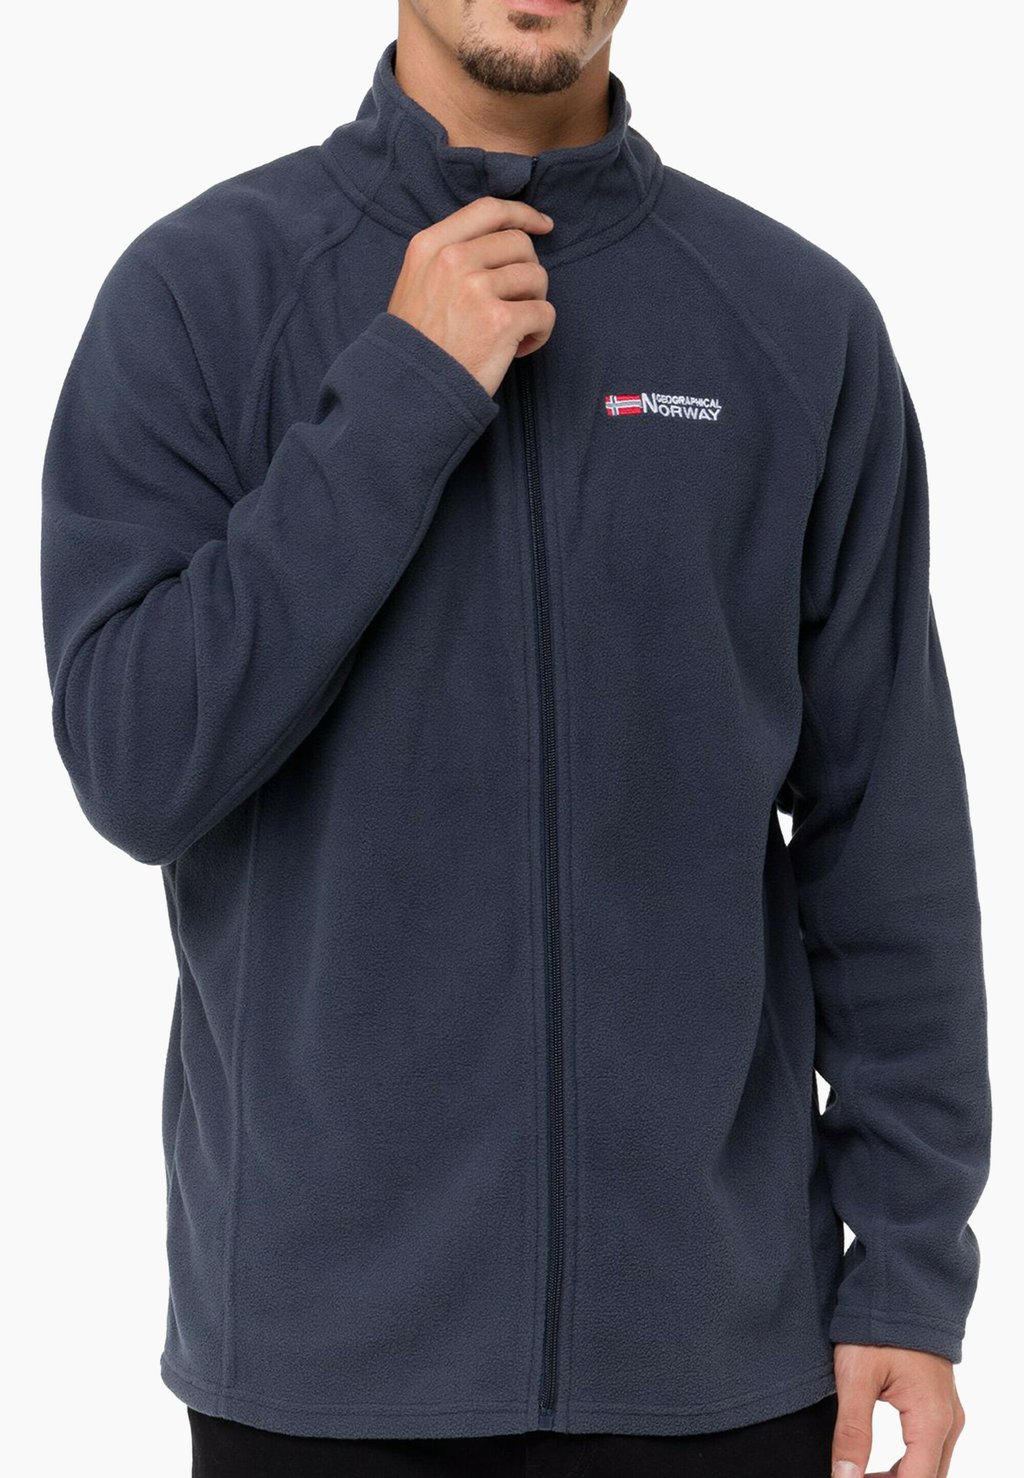 Флисовая куртка Geo Norway, цвет navy